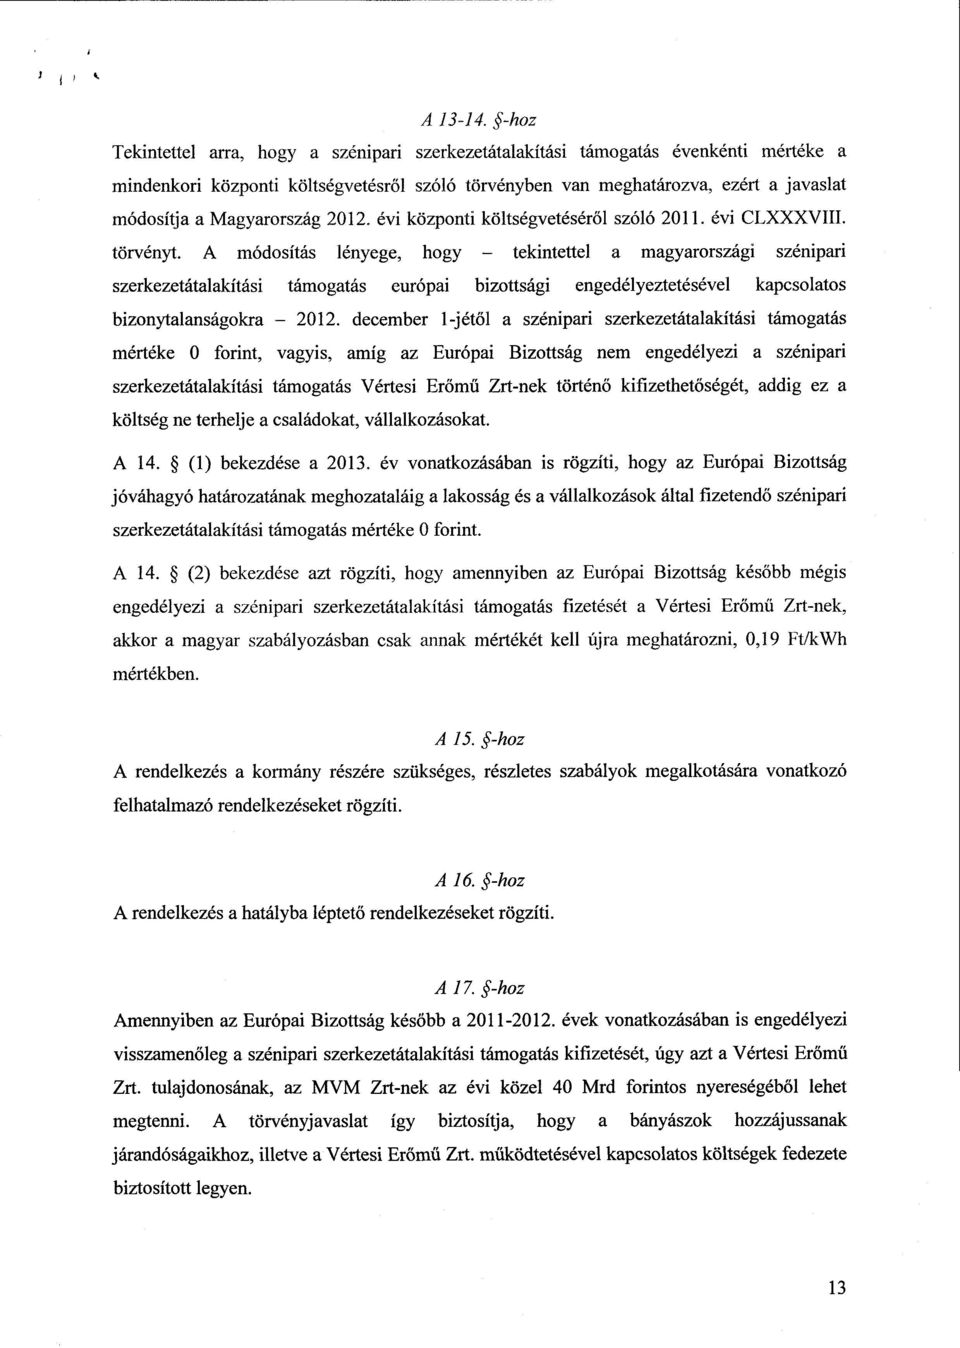 Magyarország 2012. évi központi költségvetéséről szóló 2011. évi CLXXXVIII. törvényt.